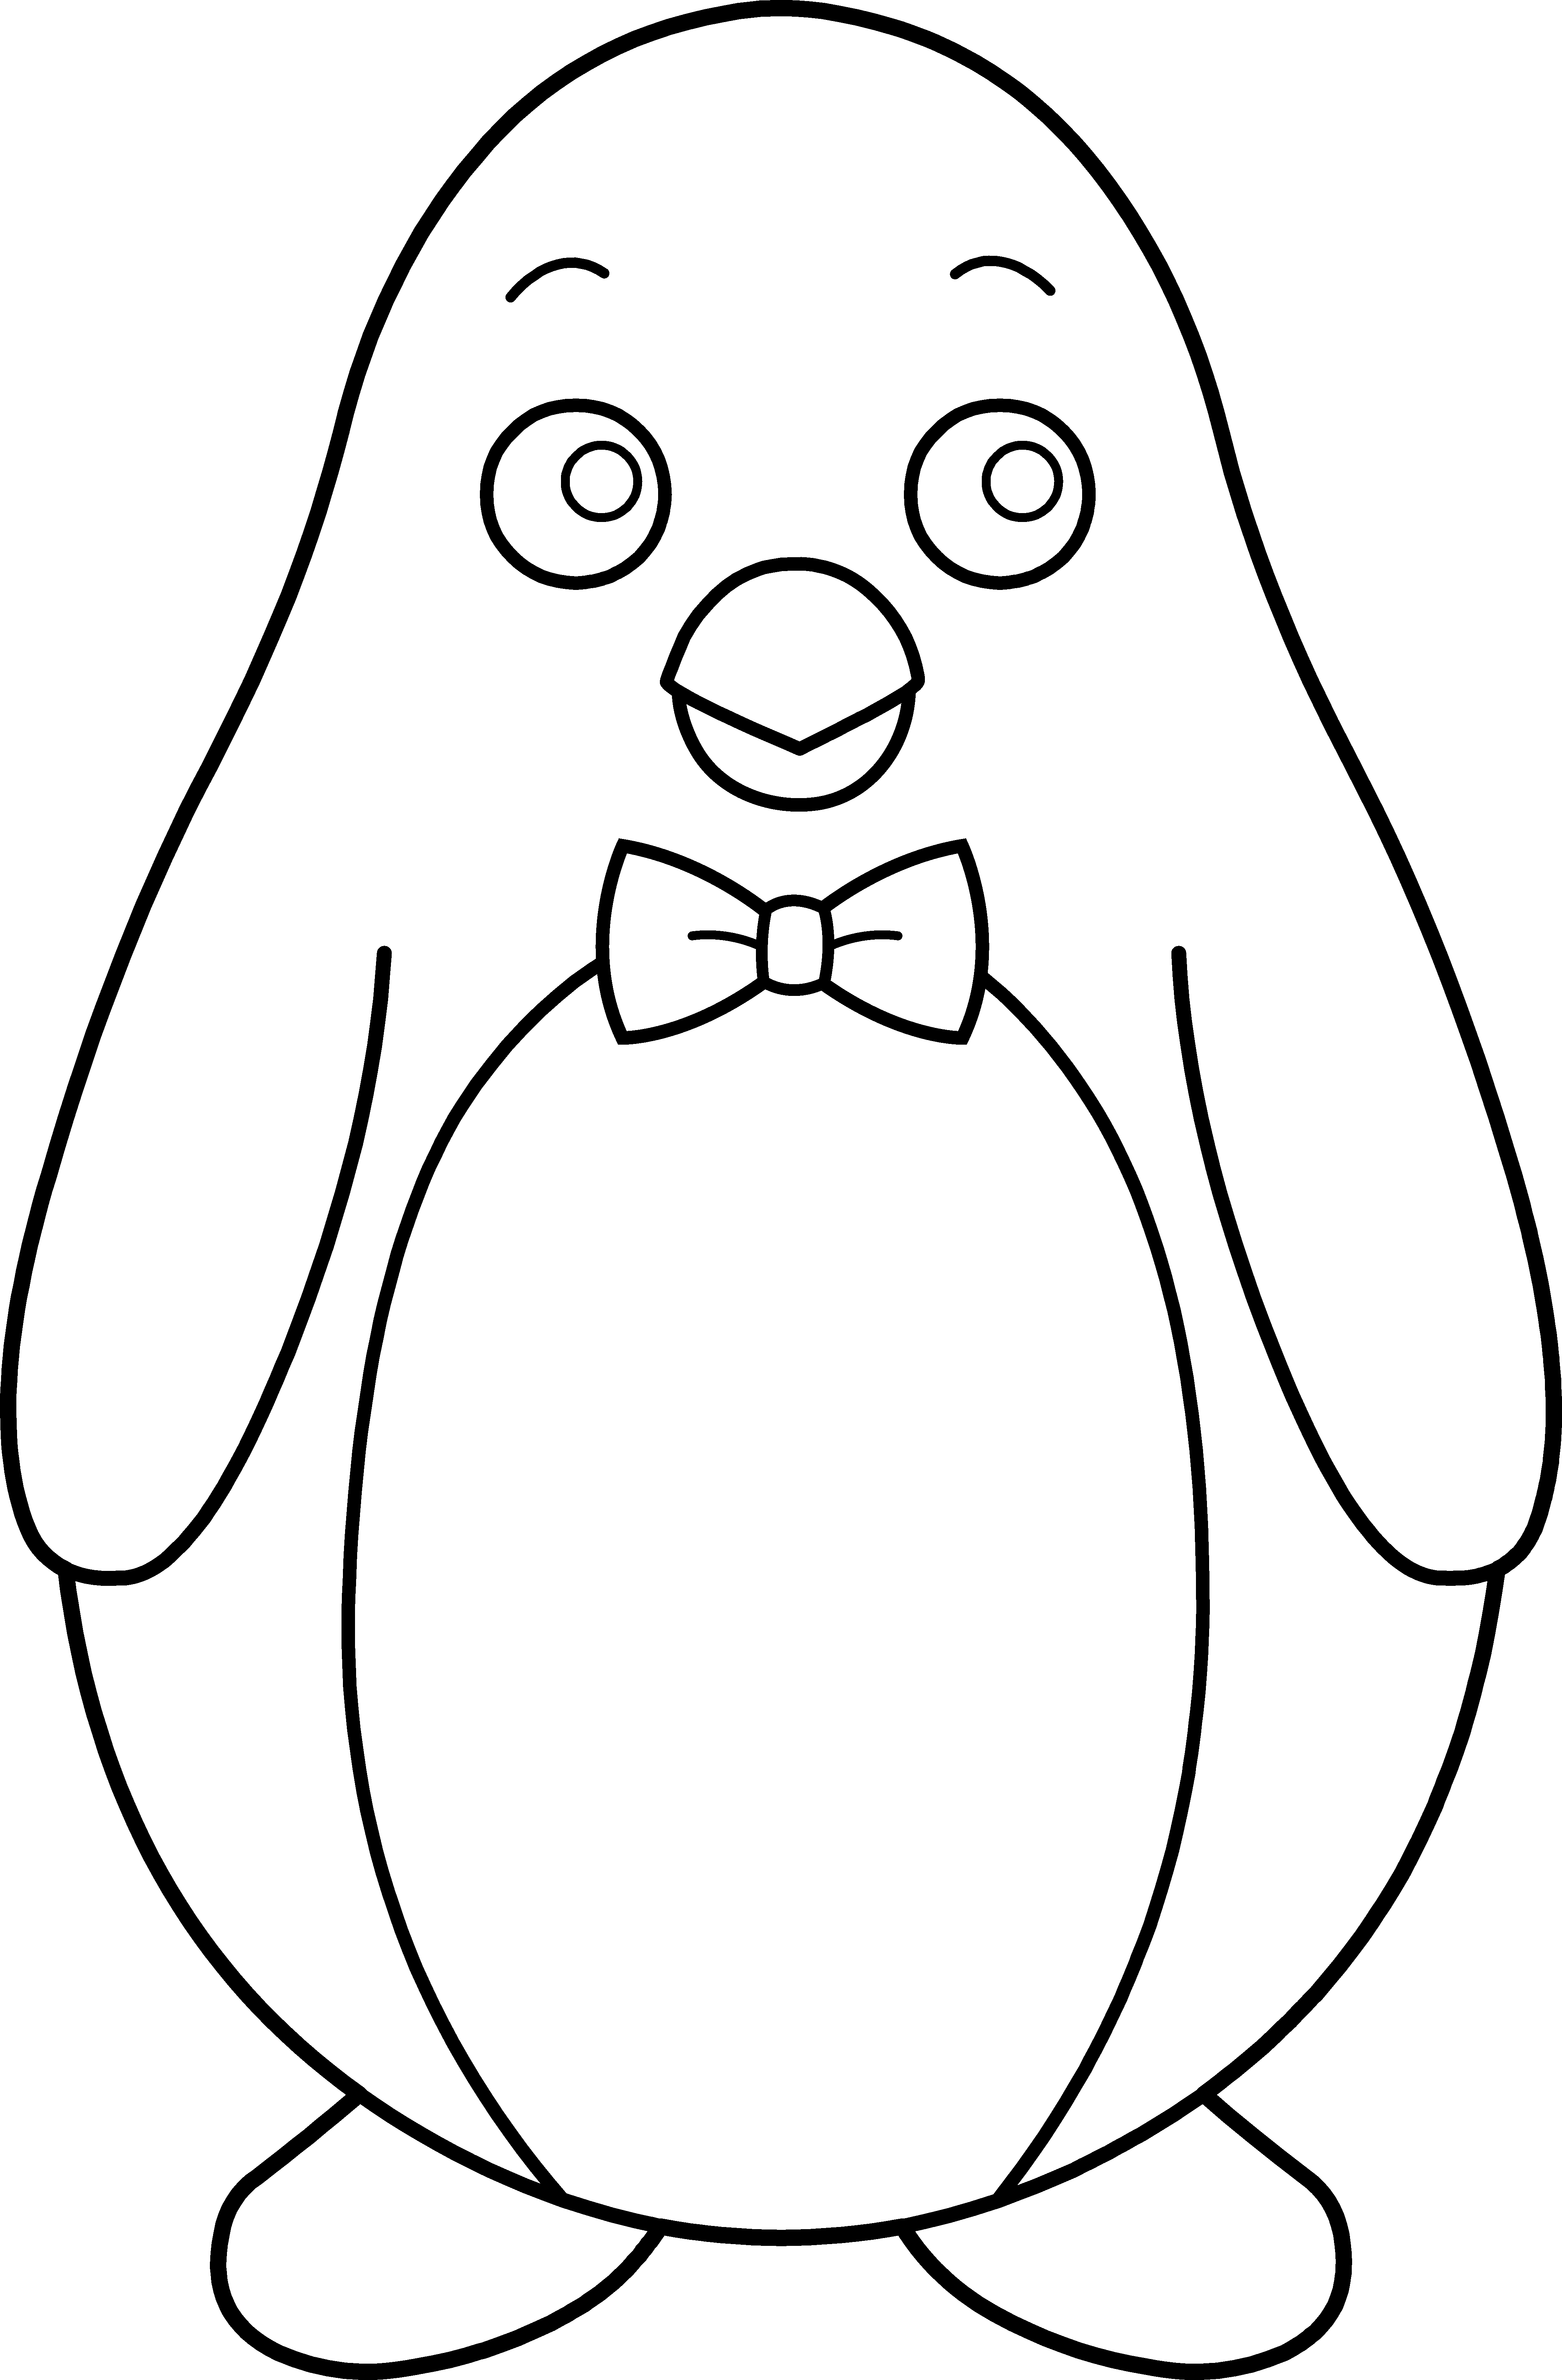 Penguin clipart black and white Best of Penguin Clip Art